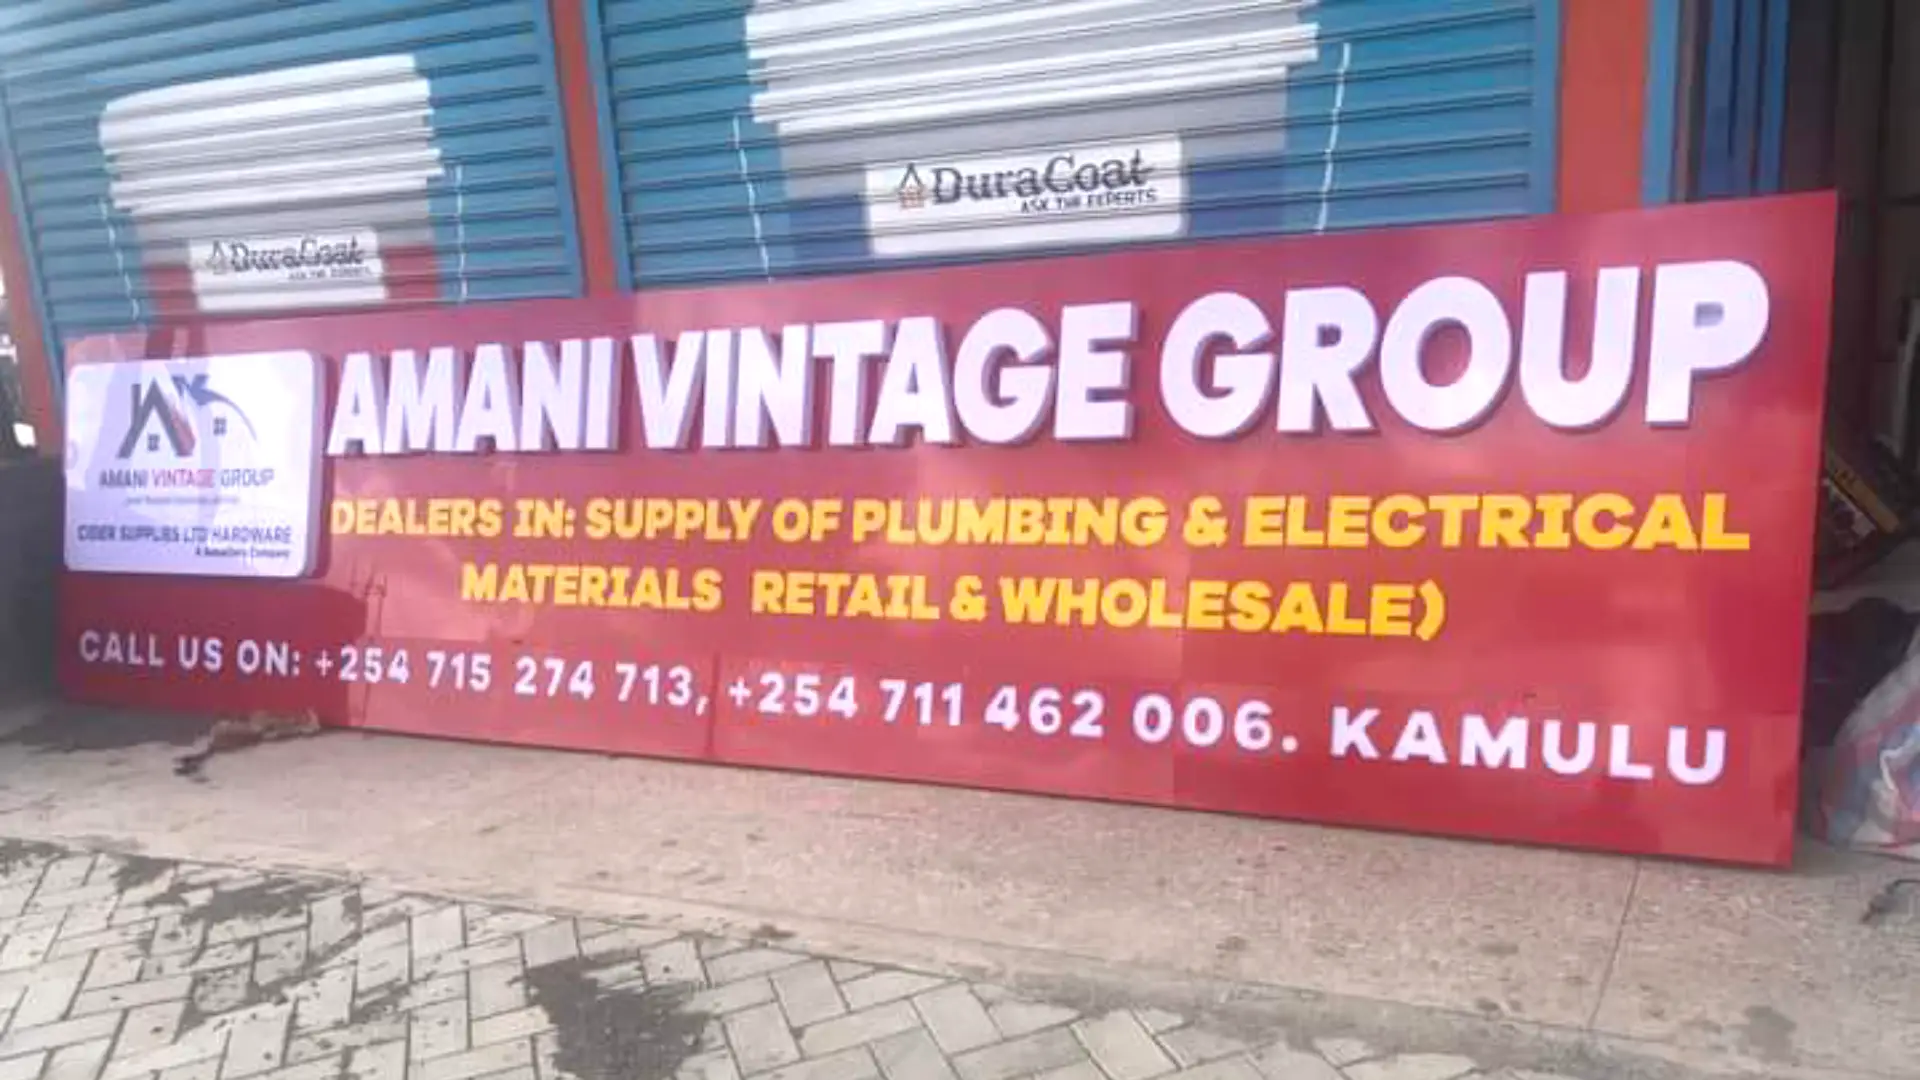 Amani vintage group signage